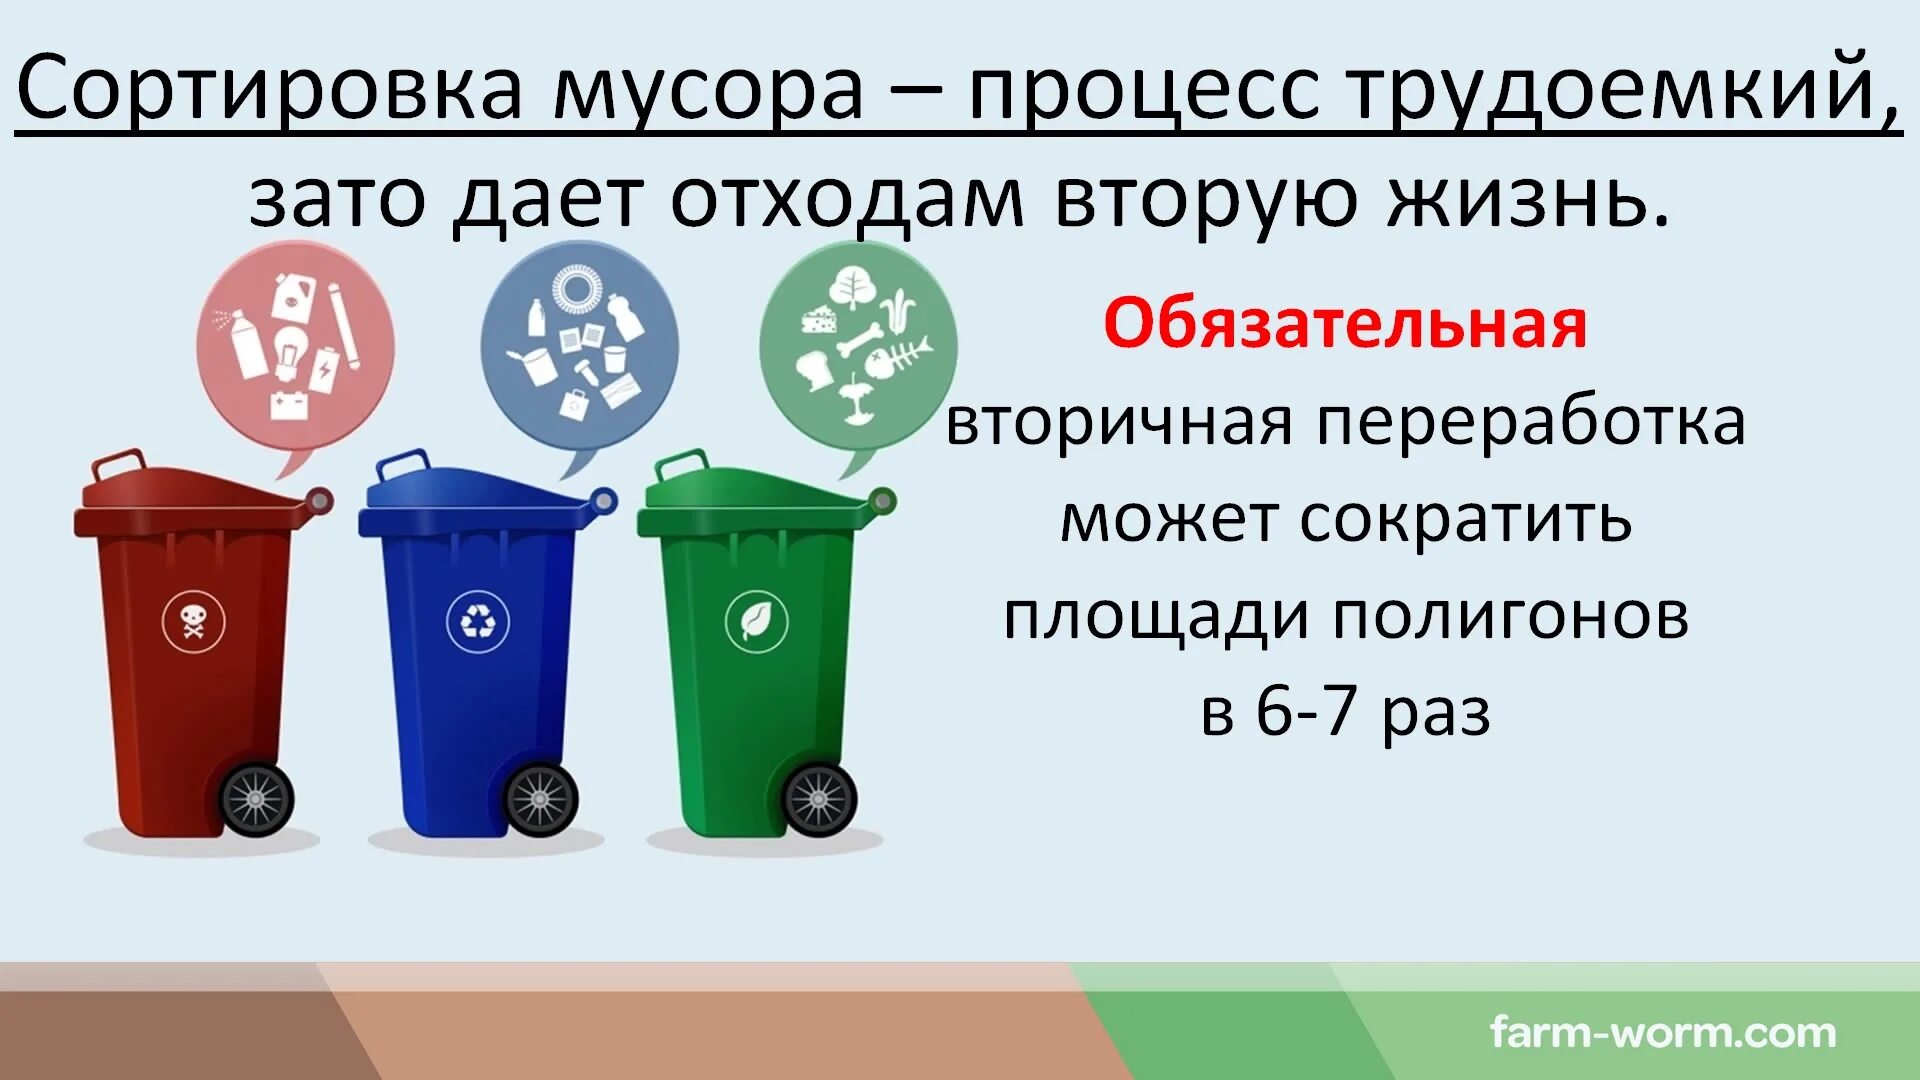 Классификация утилизации отходов. Типы бытовых отходов. Типы мусорных отходов. Для сбора отходов а допускается использование